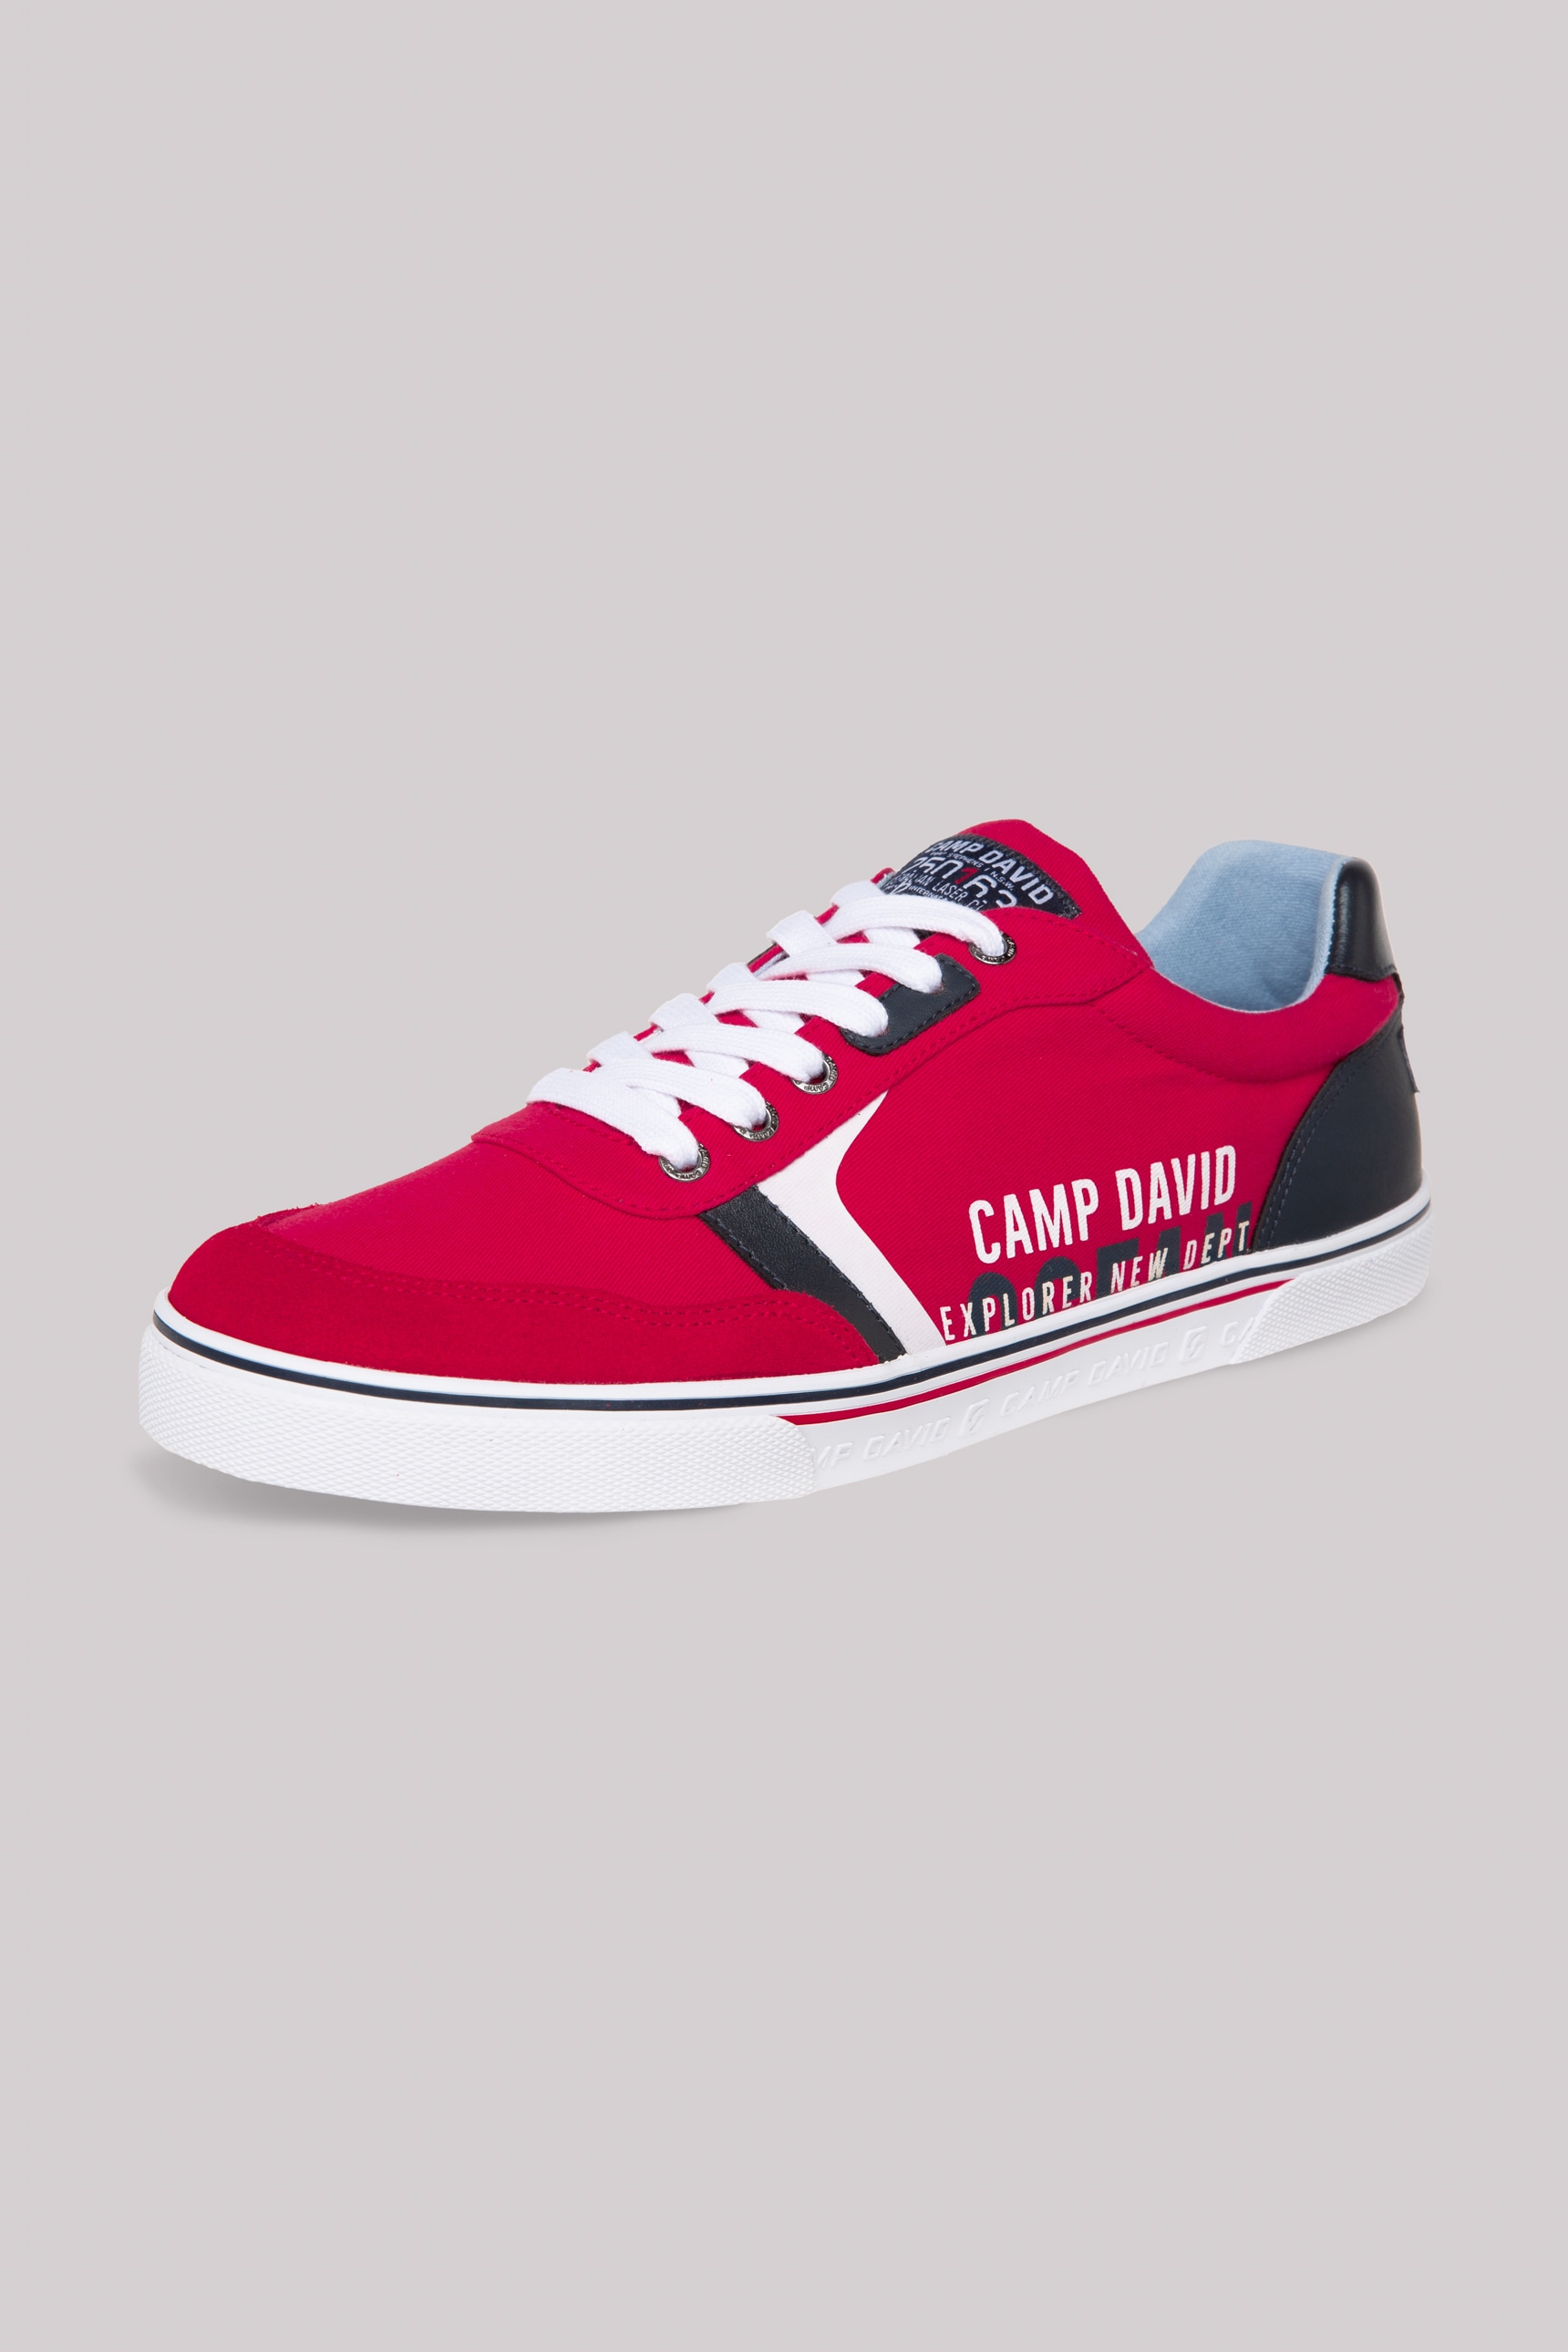 | CAMP BAUR DAVID Sneaker, Einstieg bestellen mit gepolstertem